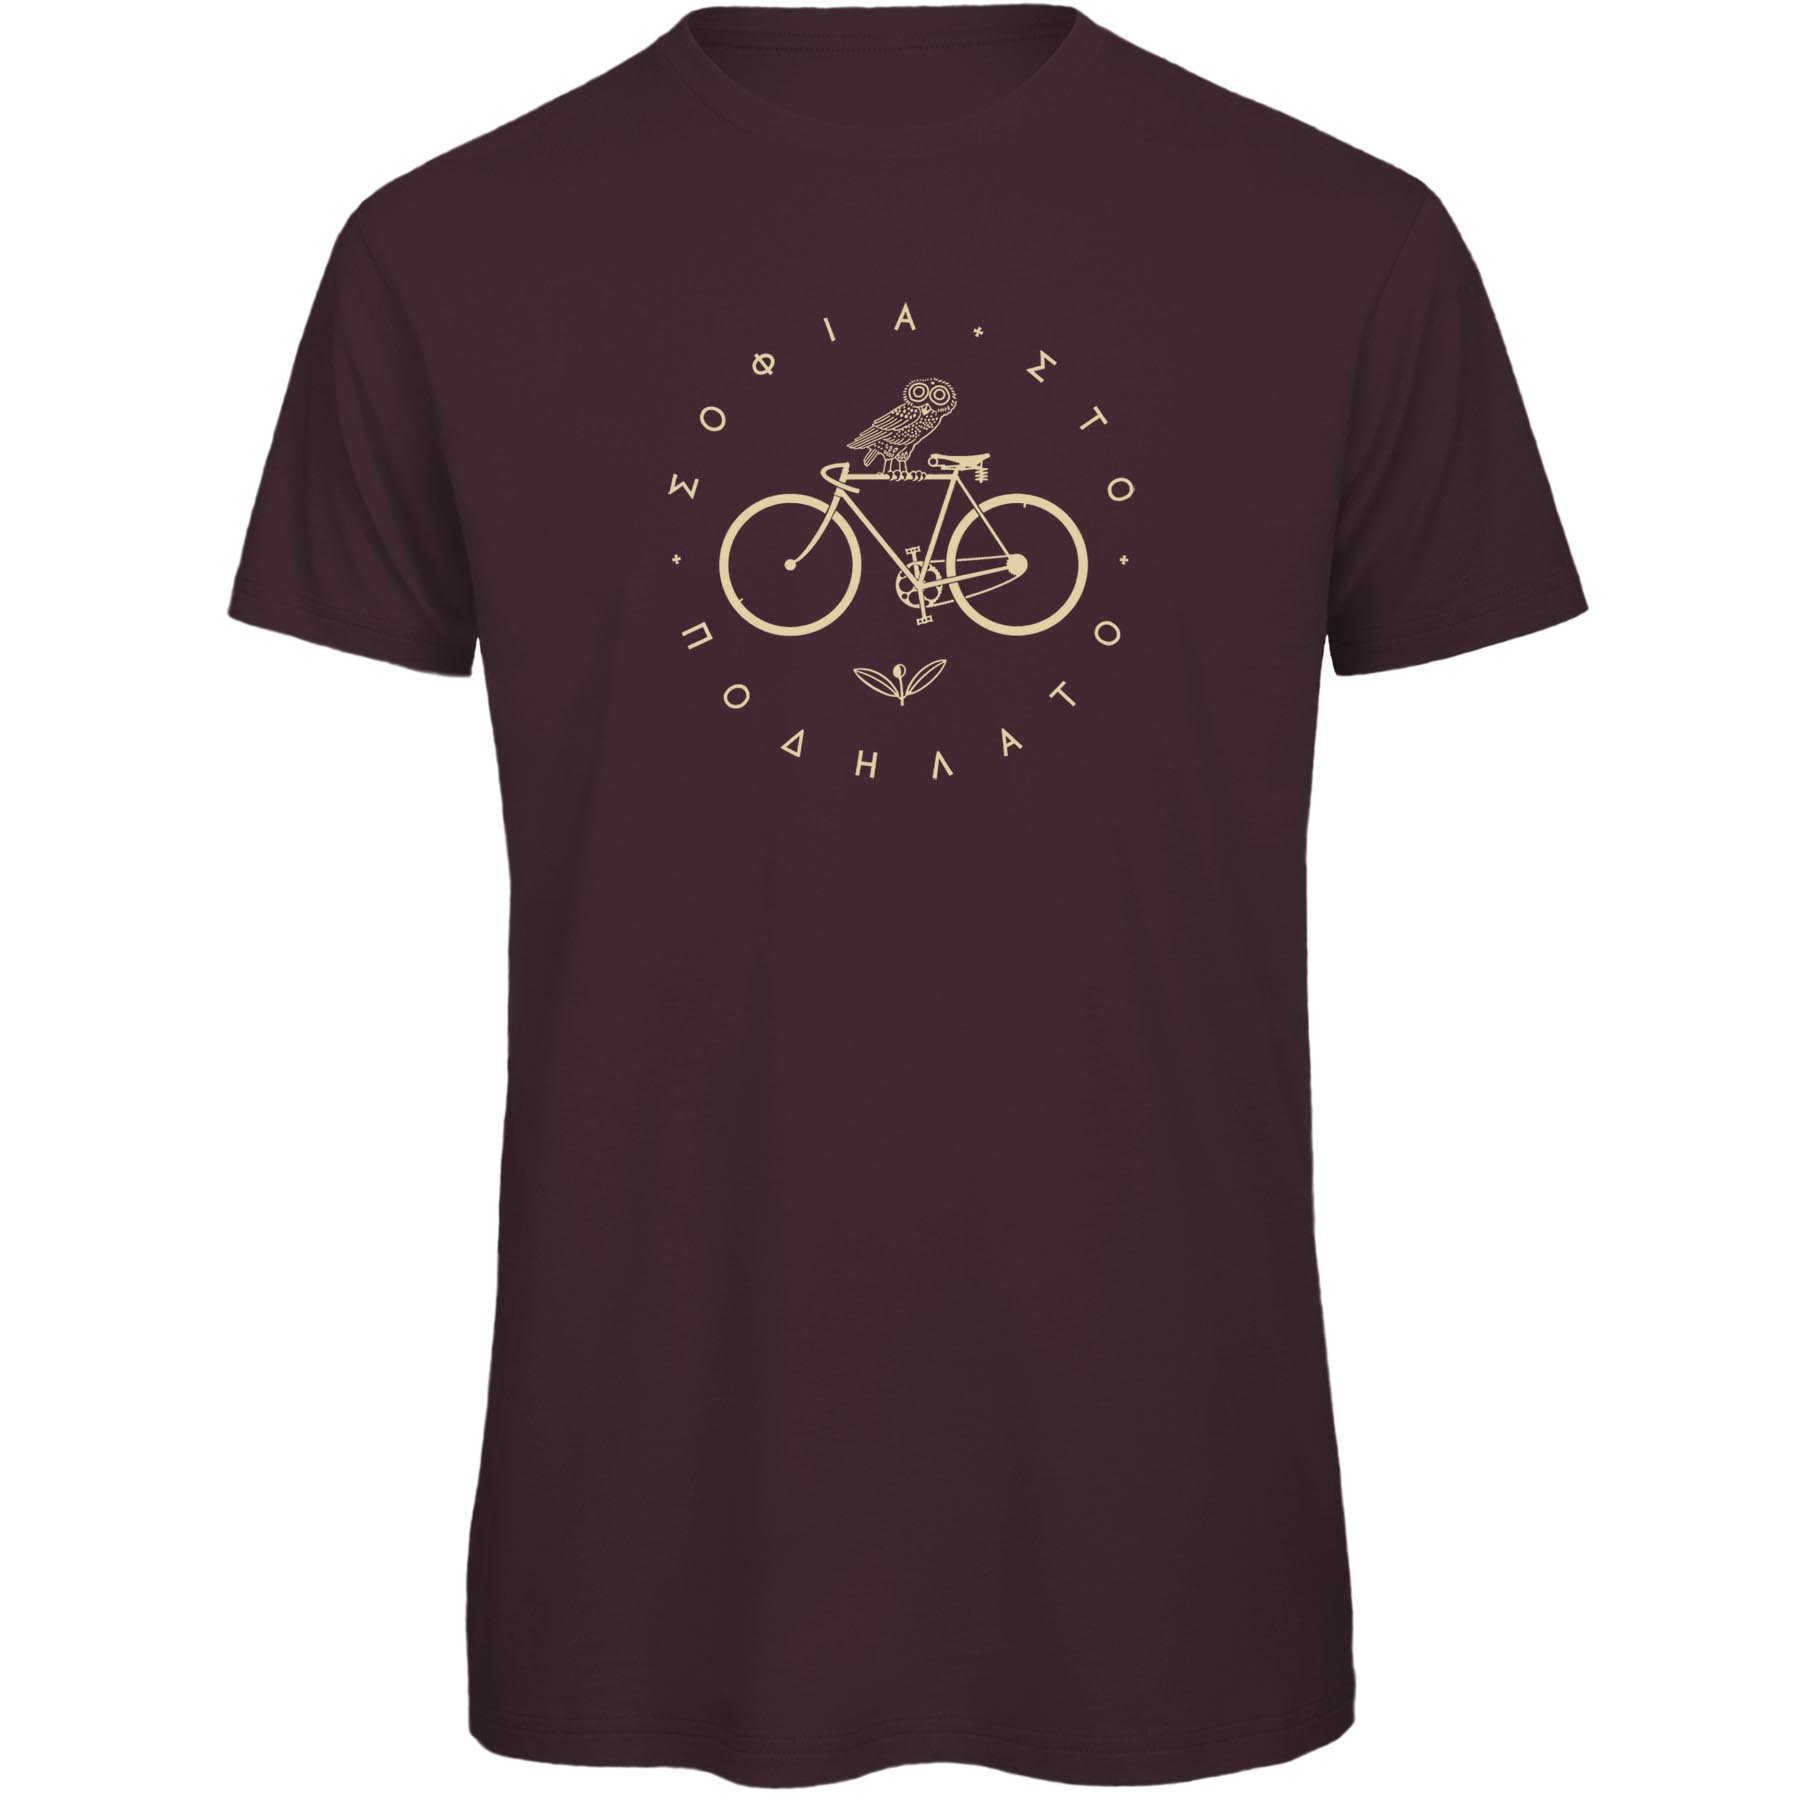 Produktbild von RTTshirts Minerva Fahrrad T-Shirt Herren - dunkelbraun